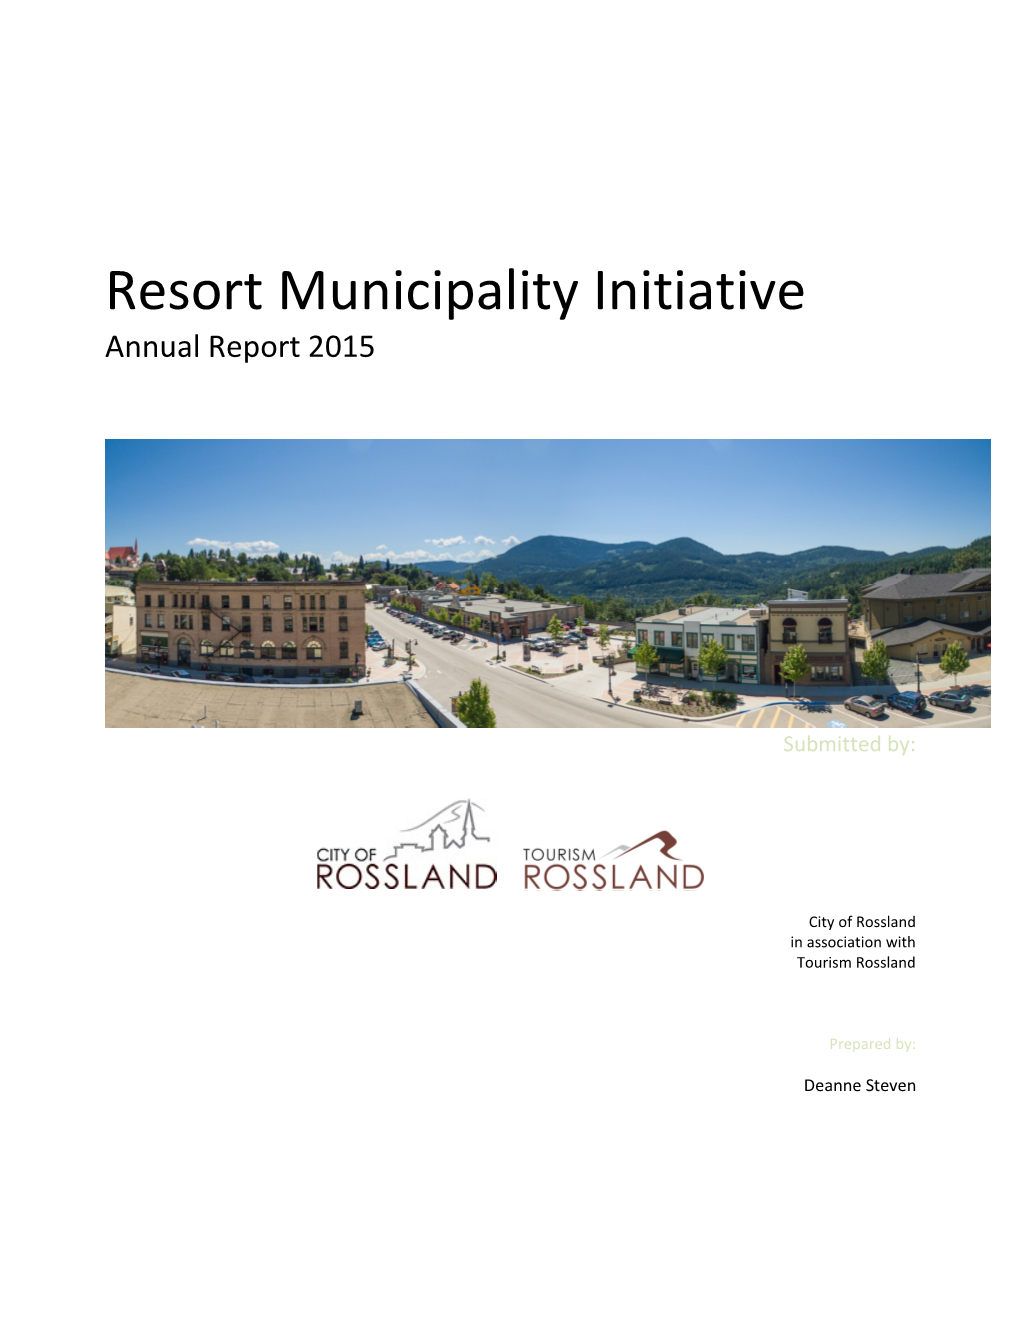 Resort Municipality Initiative Annual Report 2015